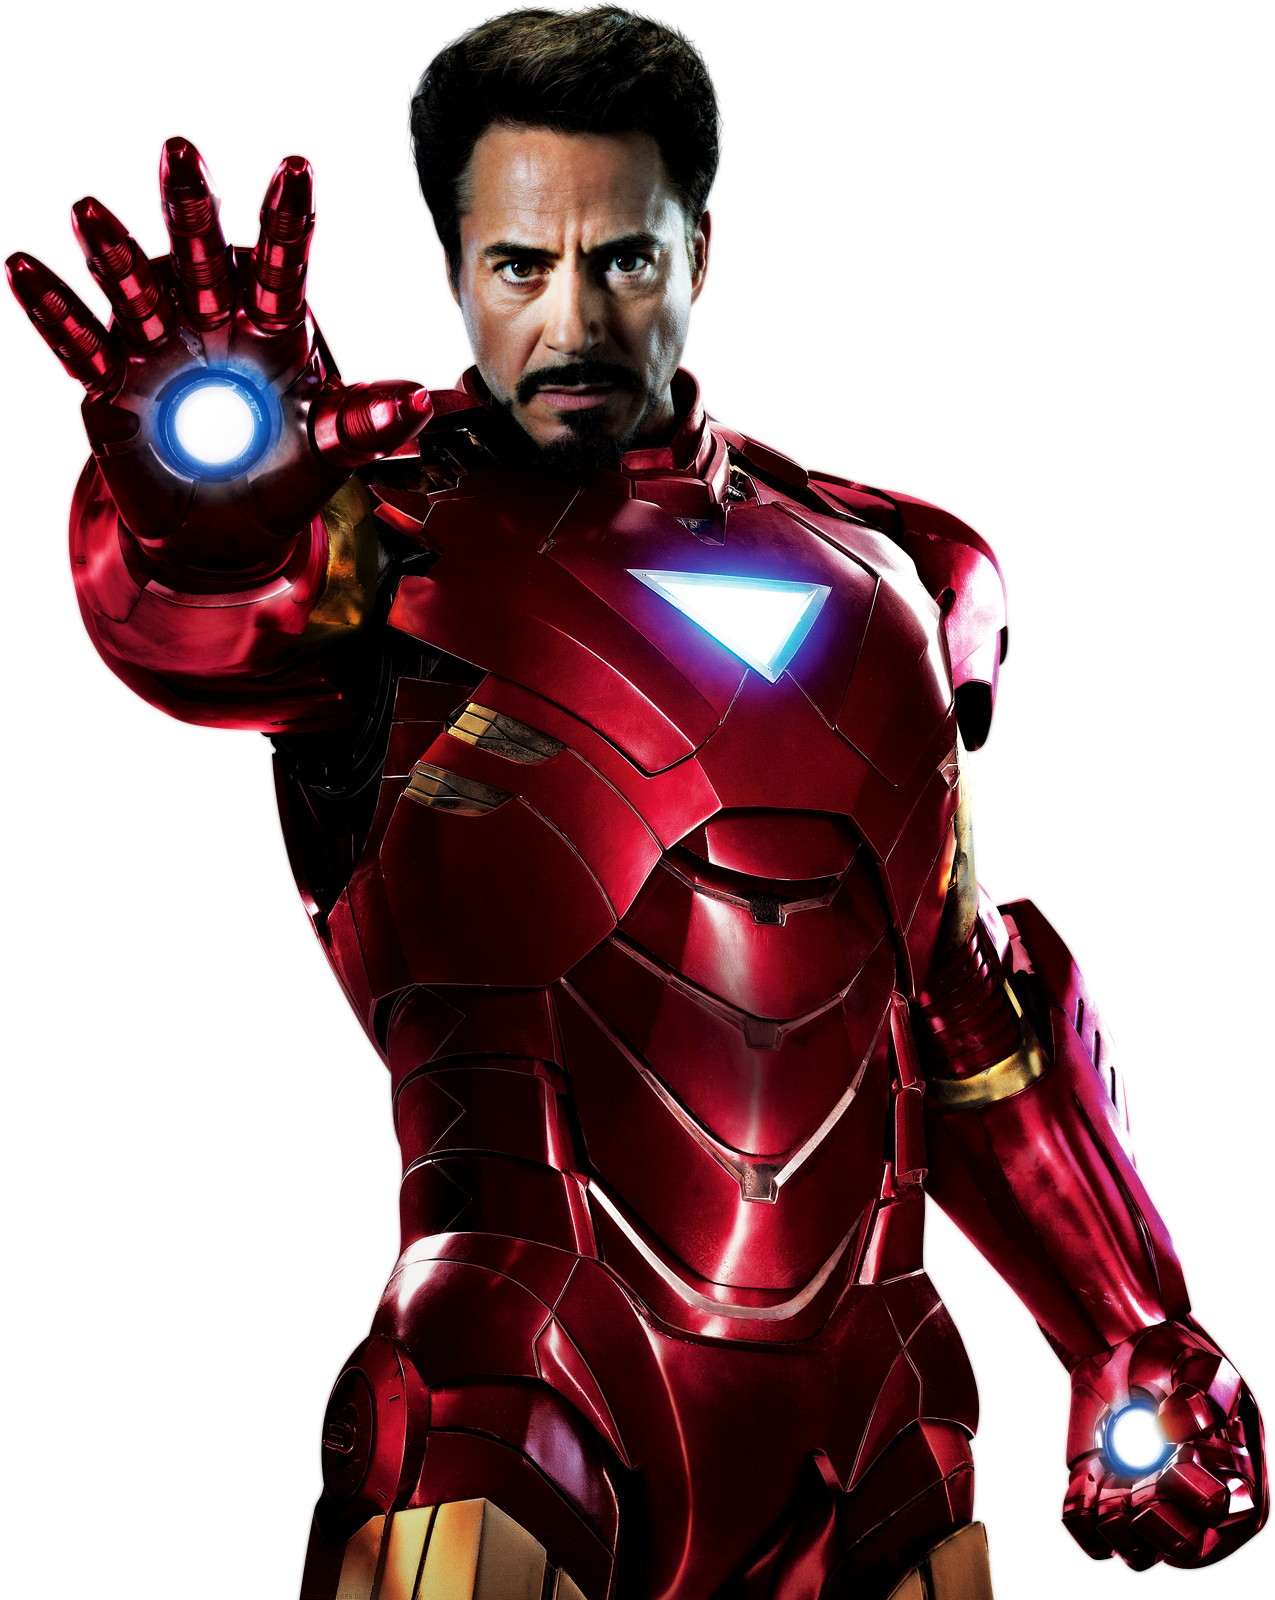 http://3.bp.blogspot.com/-10Mx41_zQGs/T5rp21YoSvI/AAAAAAAAOSg/BtWzgKSvtsw/s1600/Iron+Man+In+The+Avengers.png